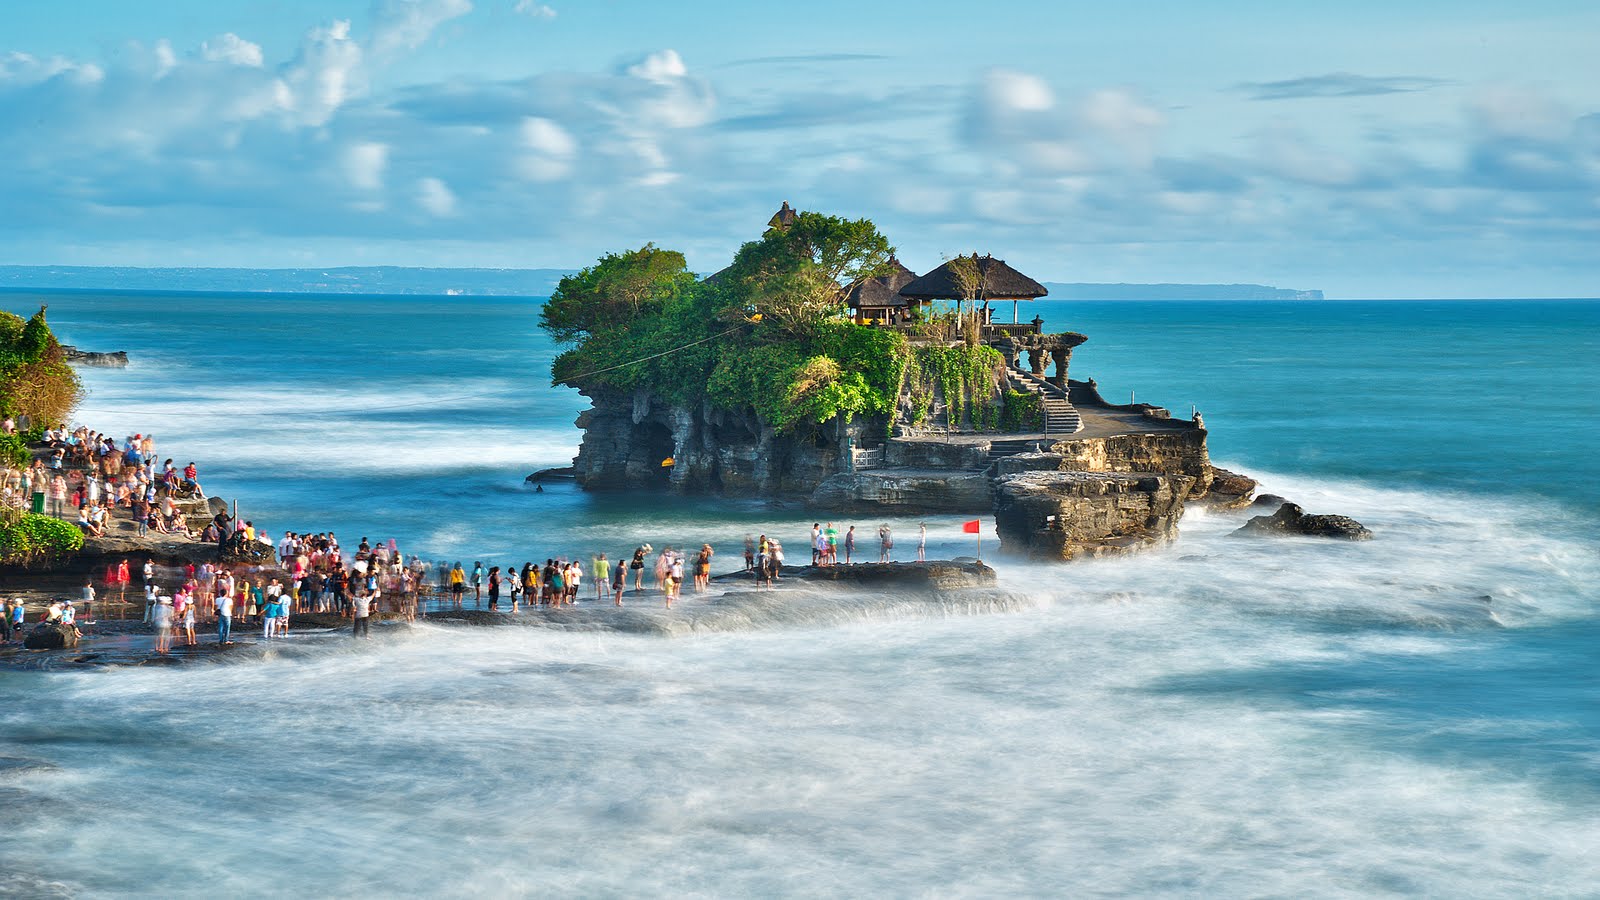 Bali Island, Free Stock Photos  Free Stock Photos